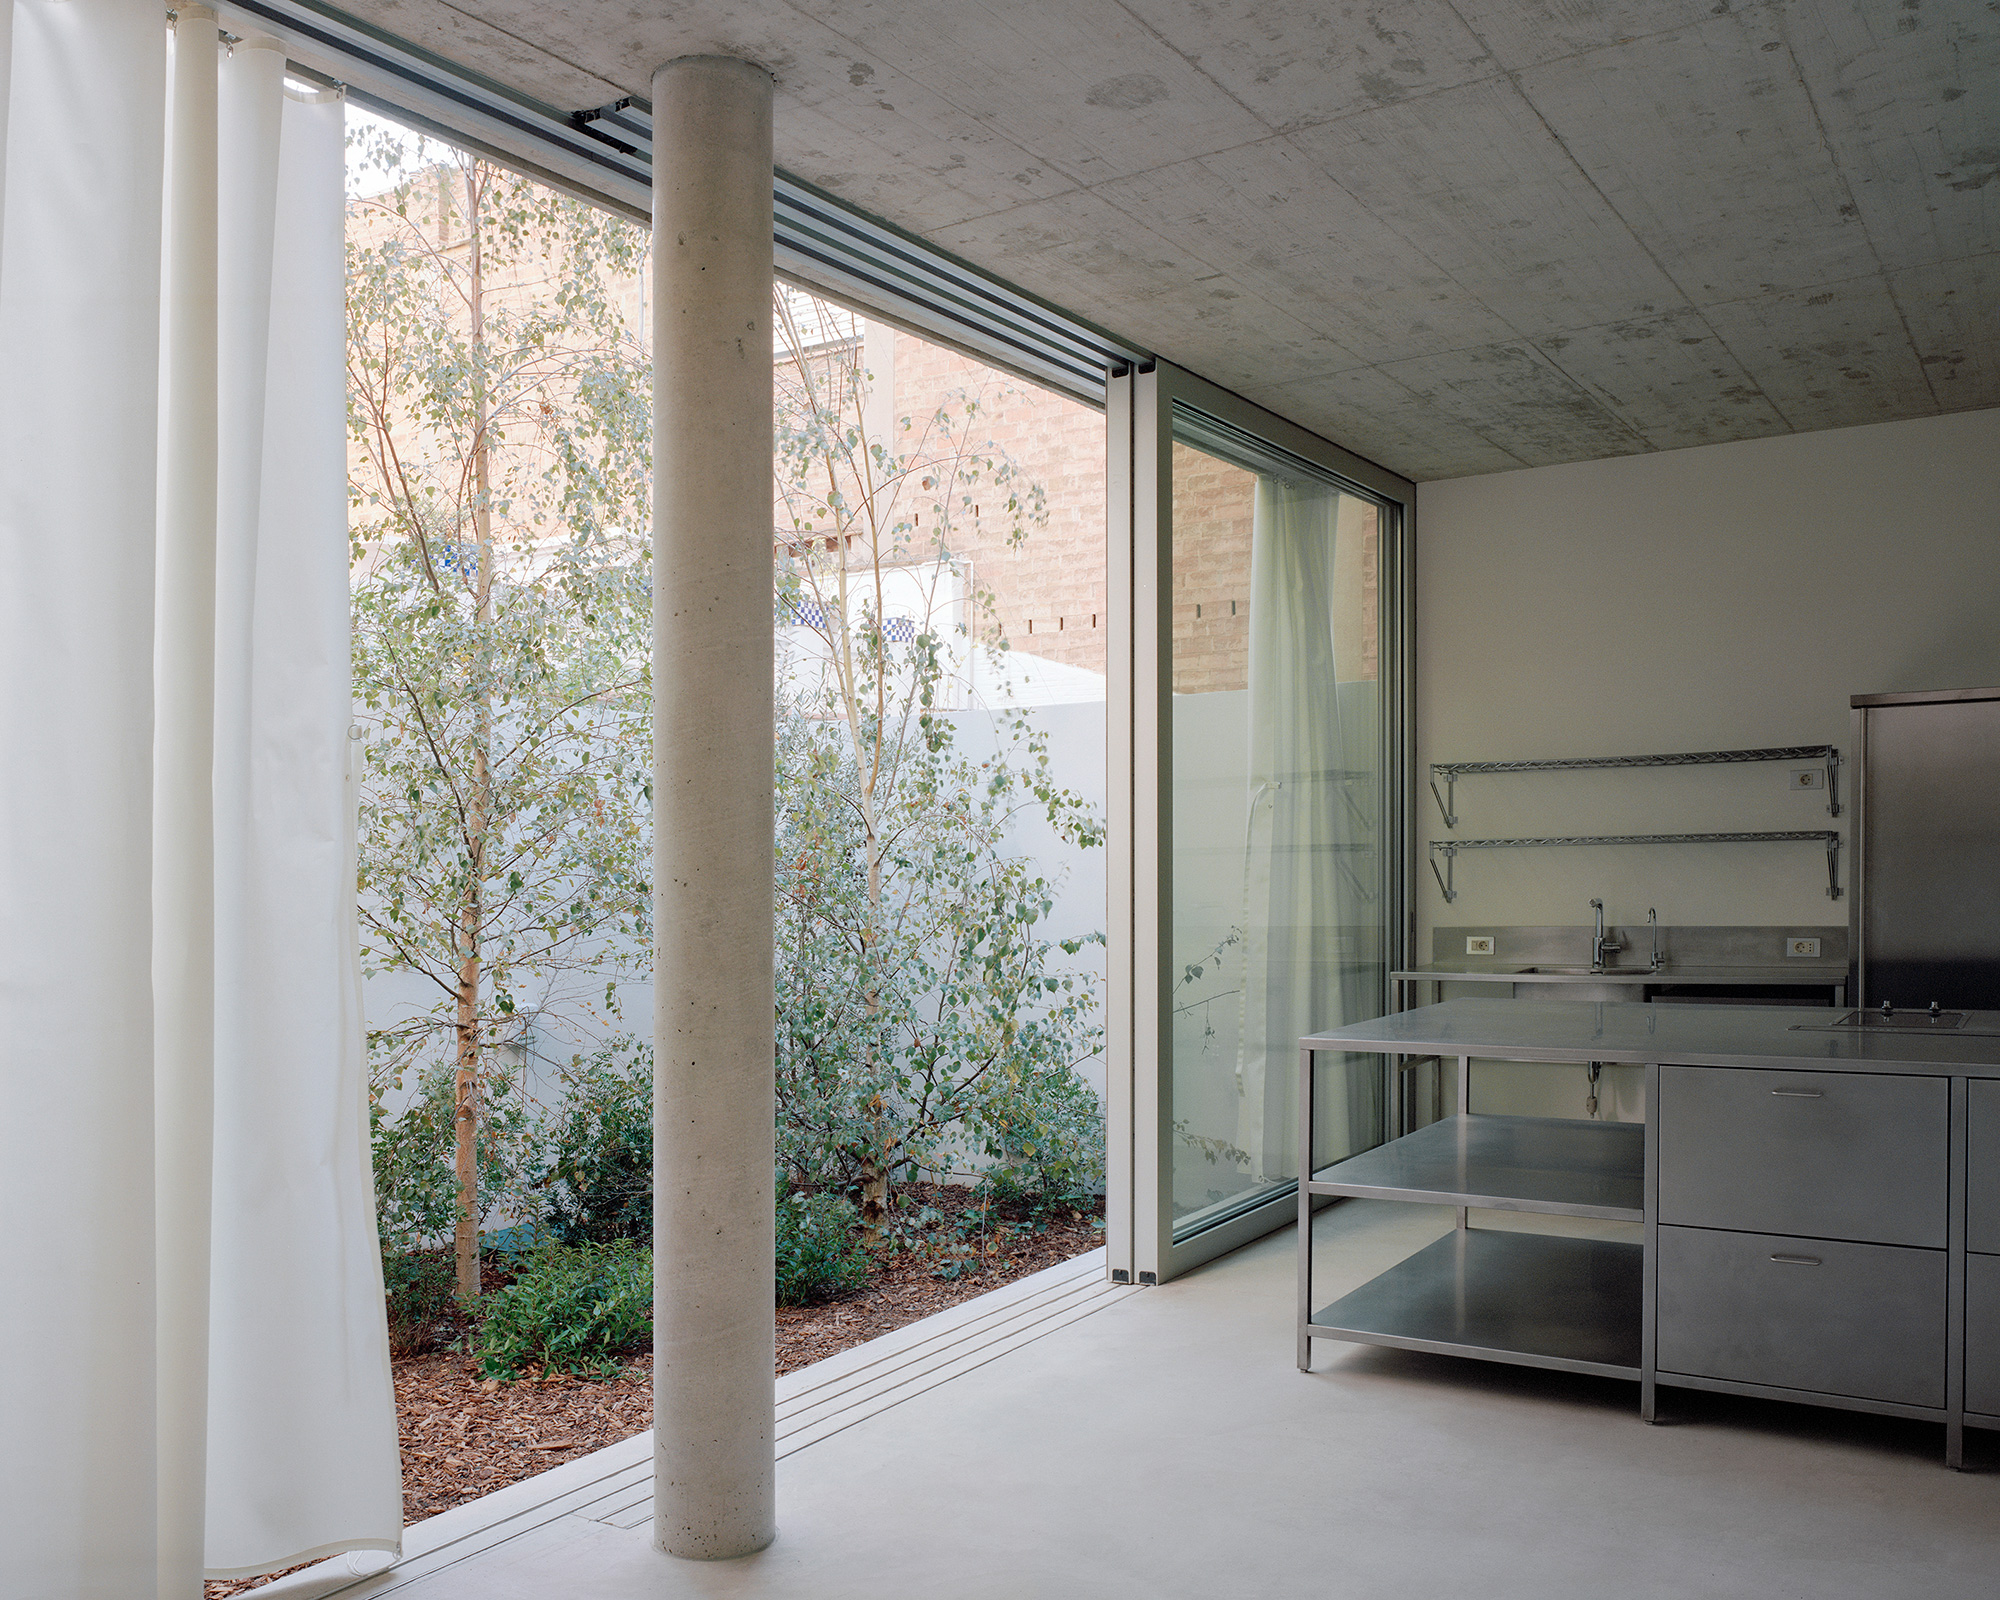 White minimalist interior with concrete floors